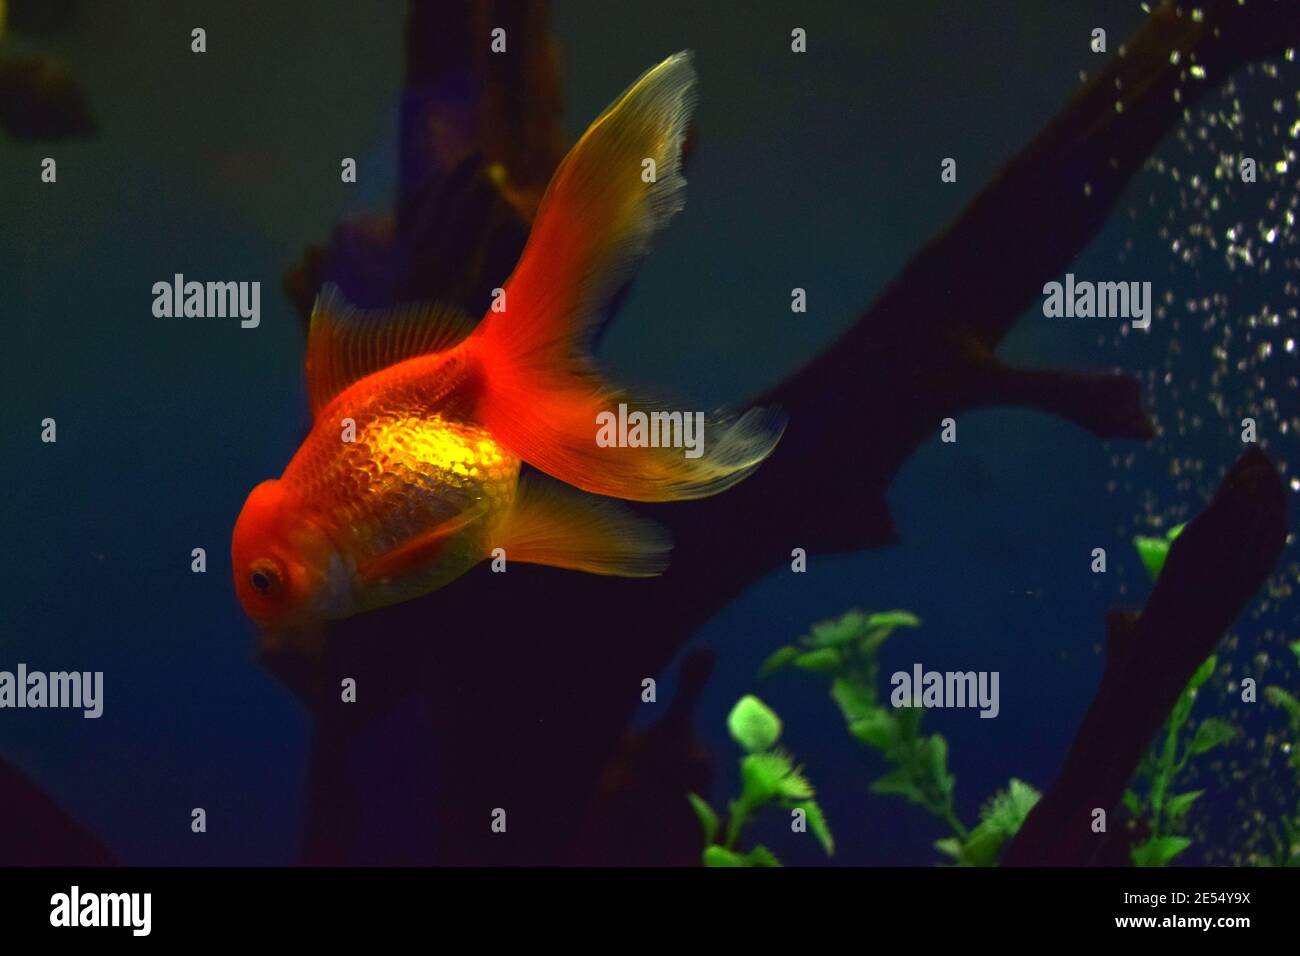 Le poisson rouge sur chinois un signe apporte une prospérité et Bonne chance. Poisson doré avec belle échelle fine, nageoires, et queue contre l'herbe verte. Banque D'Images